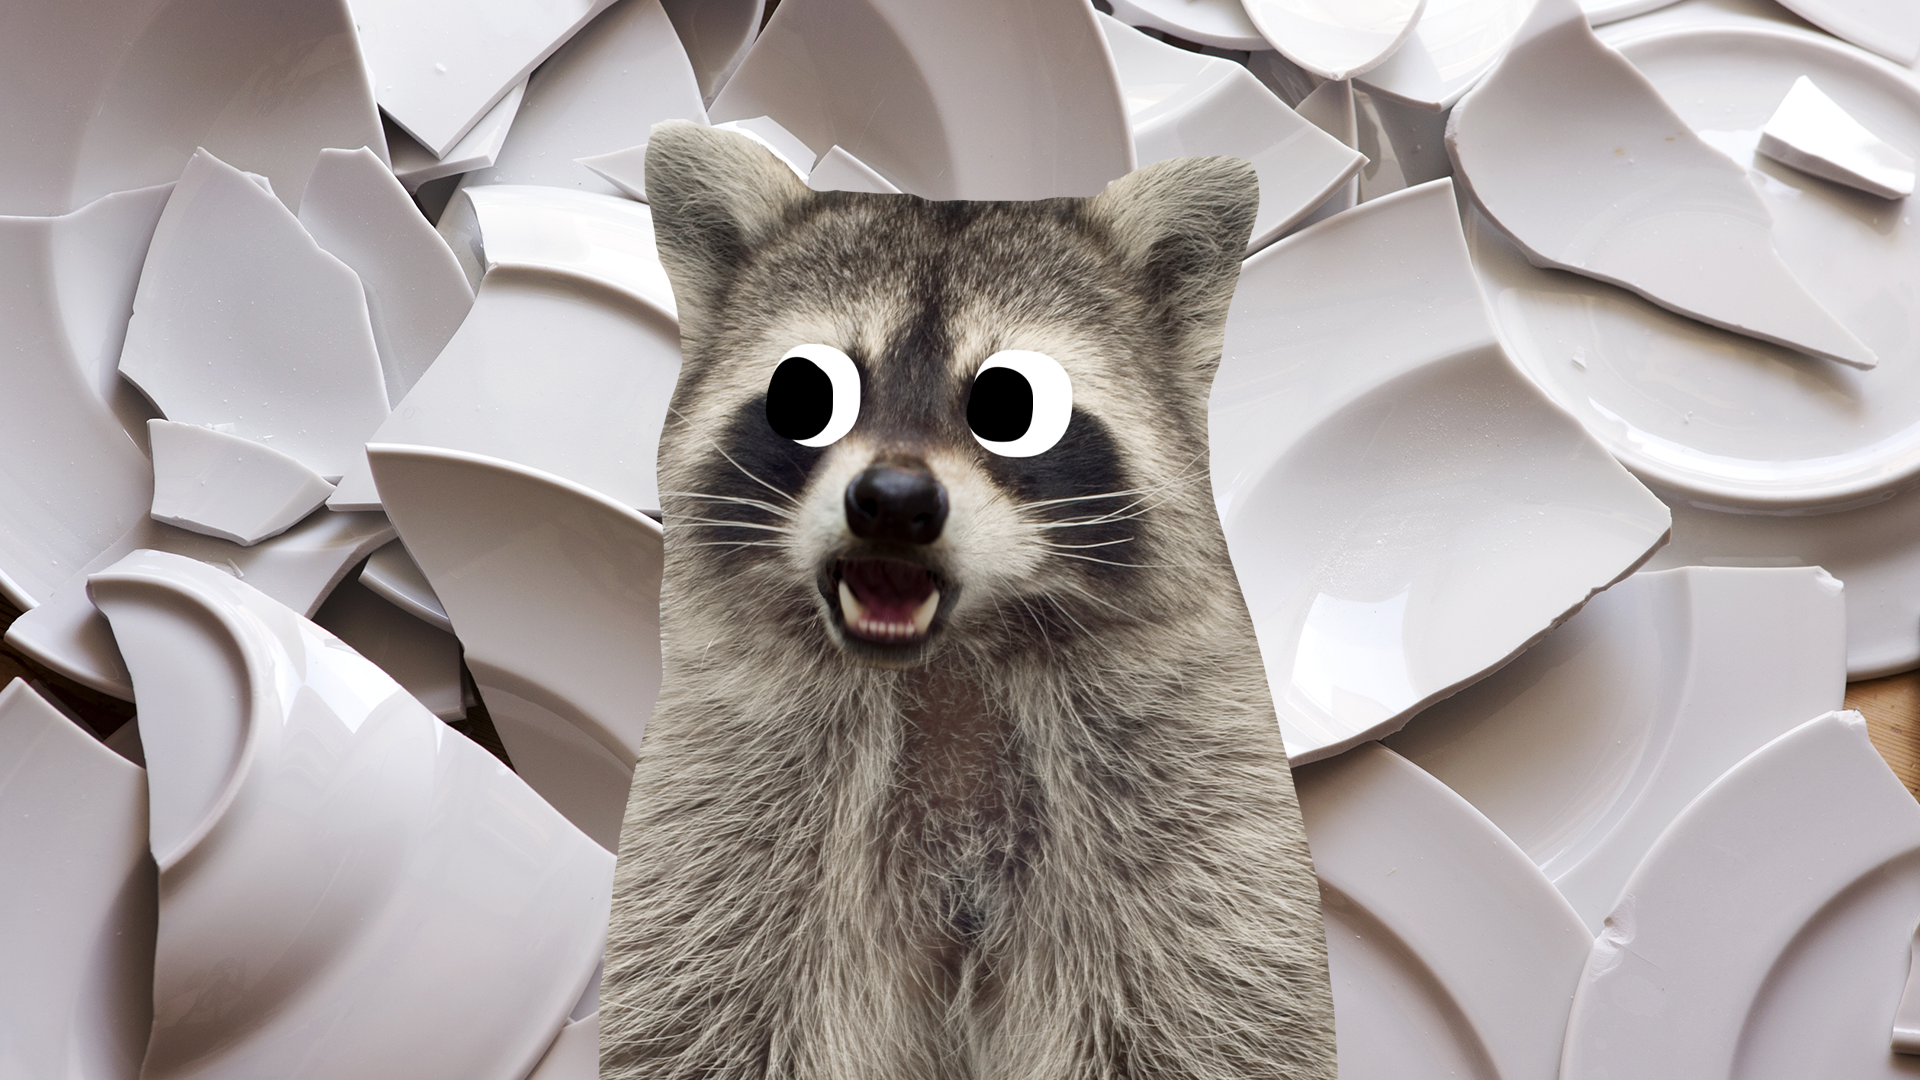 Nervous raccoon and broken plates